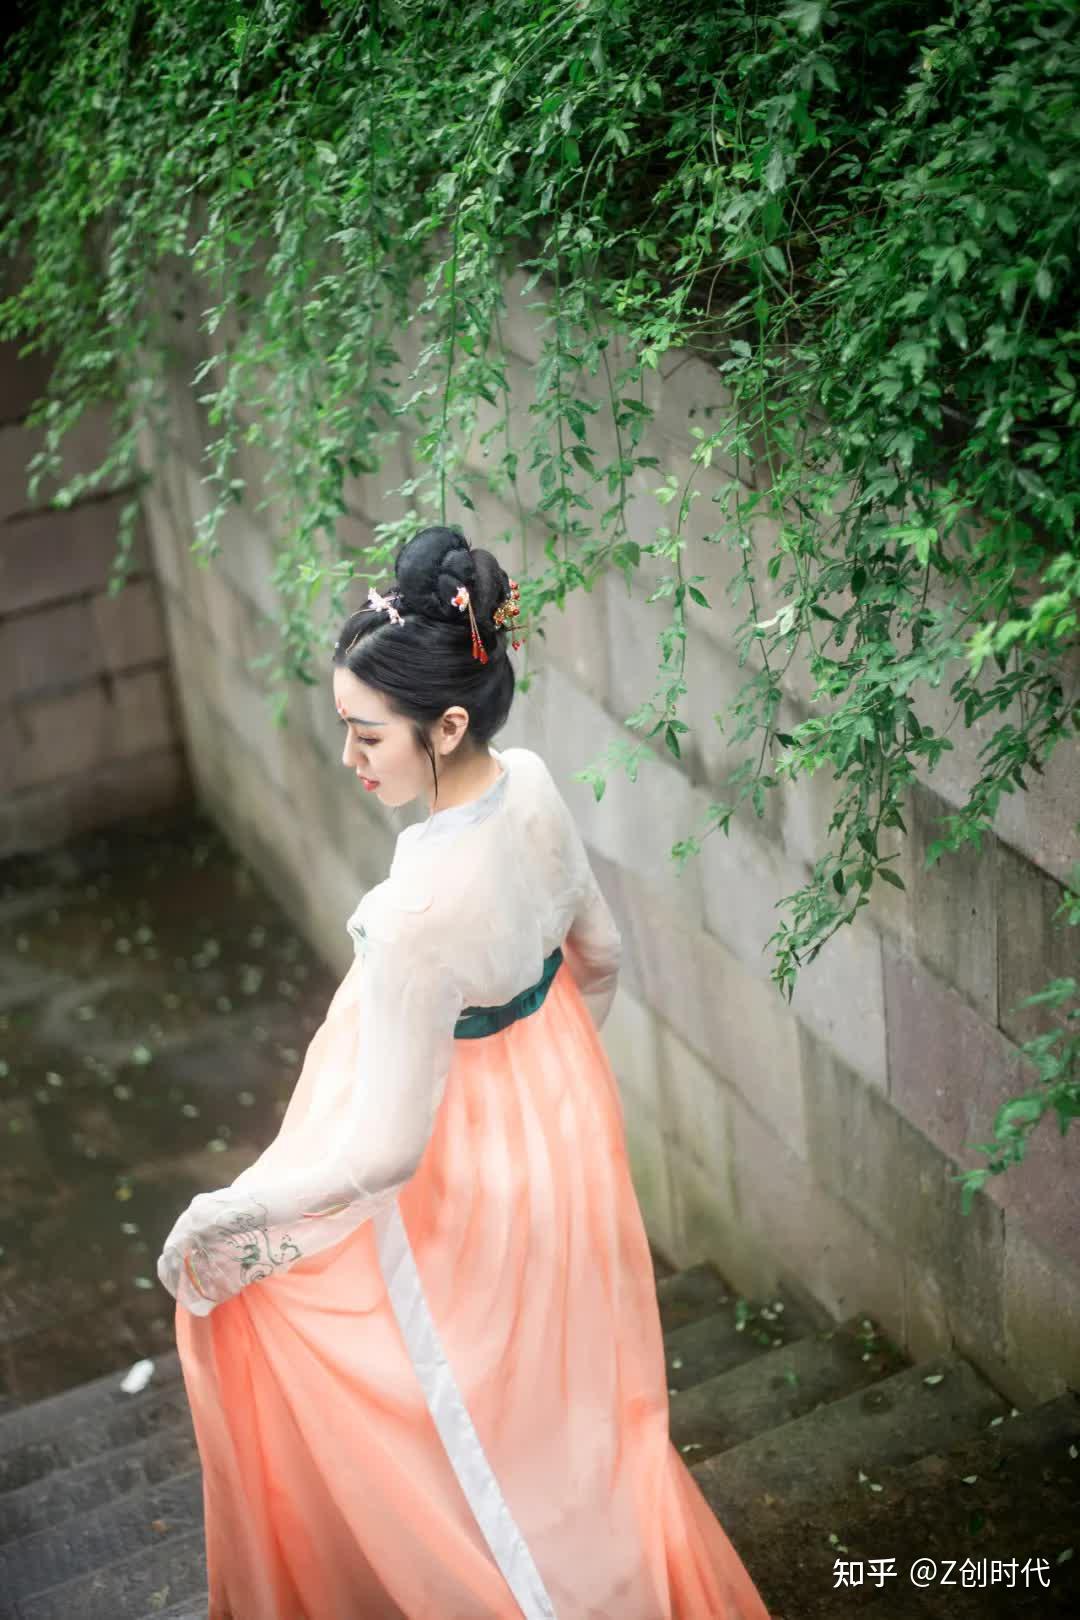 这套中国风美女古装写真,婀娜姿态,尽显婉约与娇羞